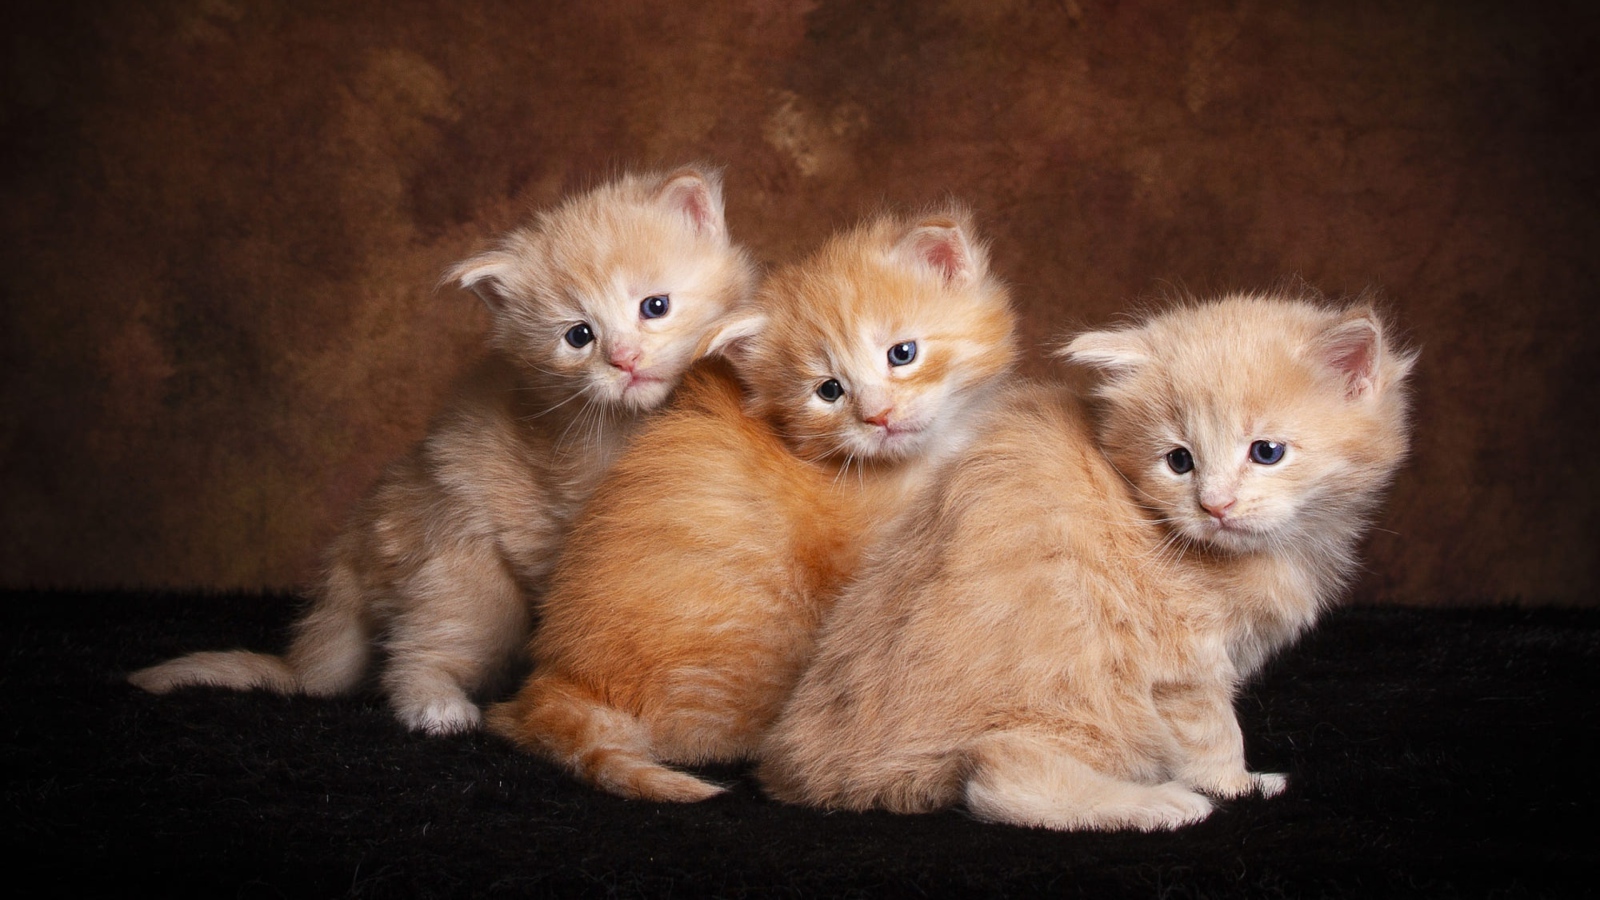 Three little fluffy ginger kittens